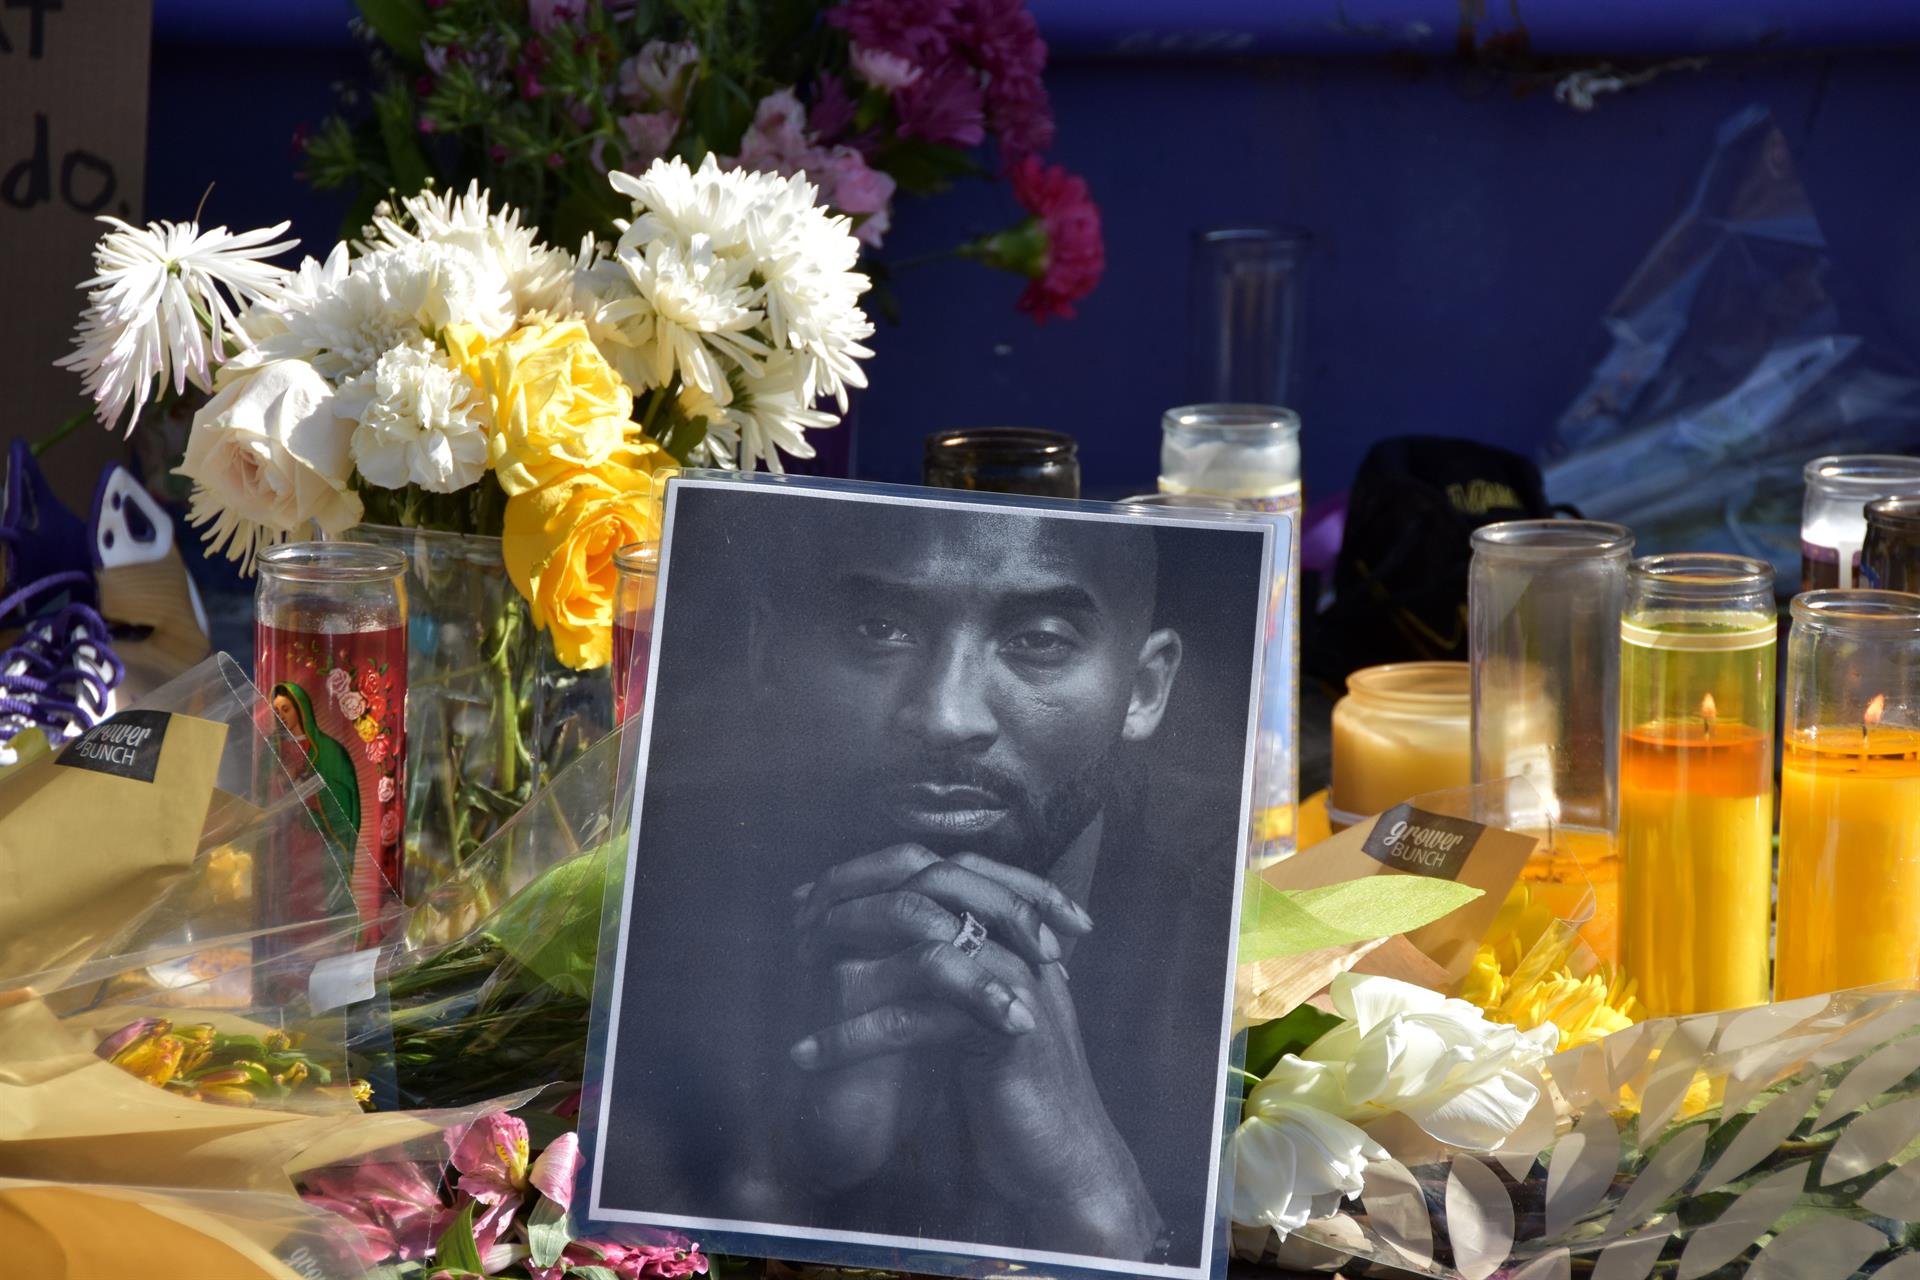 Inicia juicio por la difusión ilegal de fotos del cadáver de Kobe Bryant